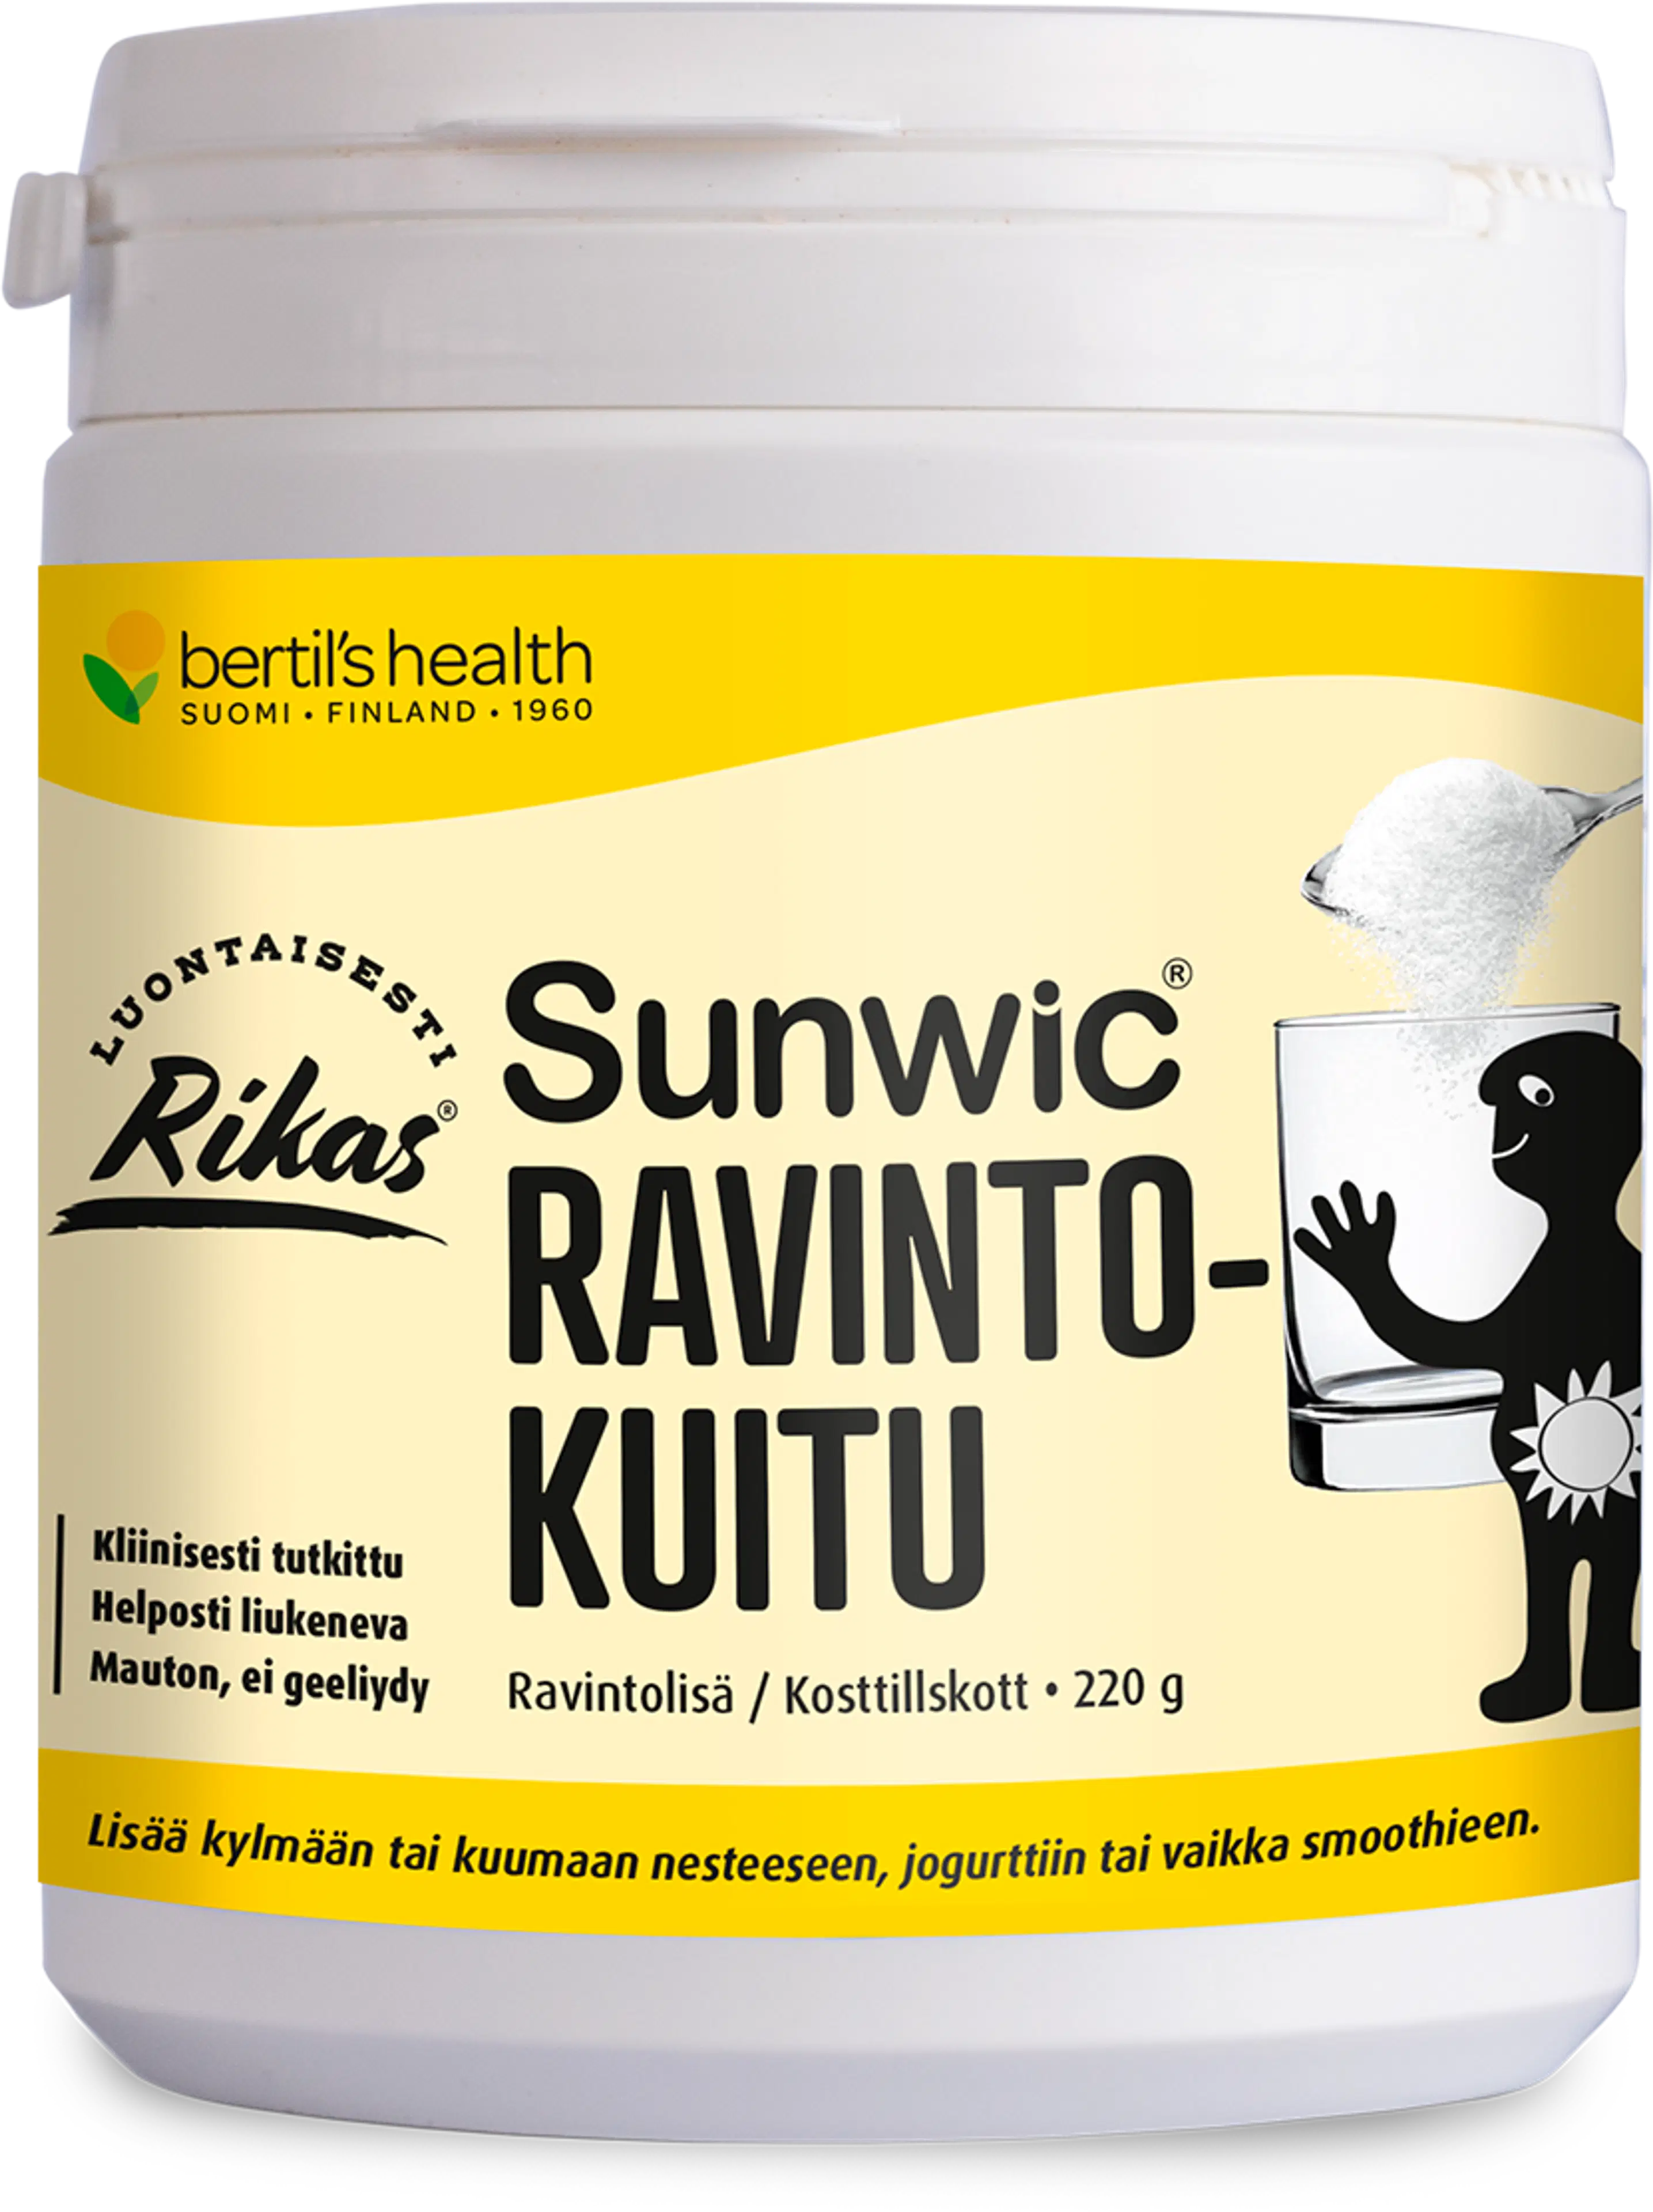 bertil´s health Rikas Sunwic ravintokuitu 220 g